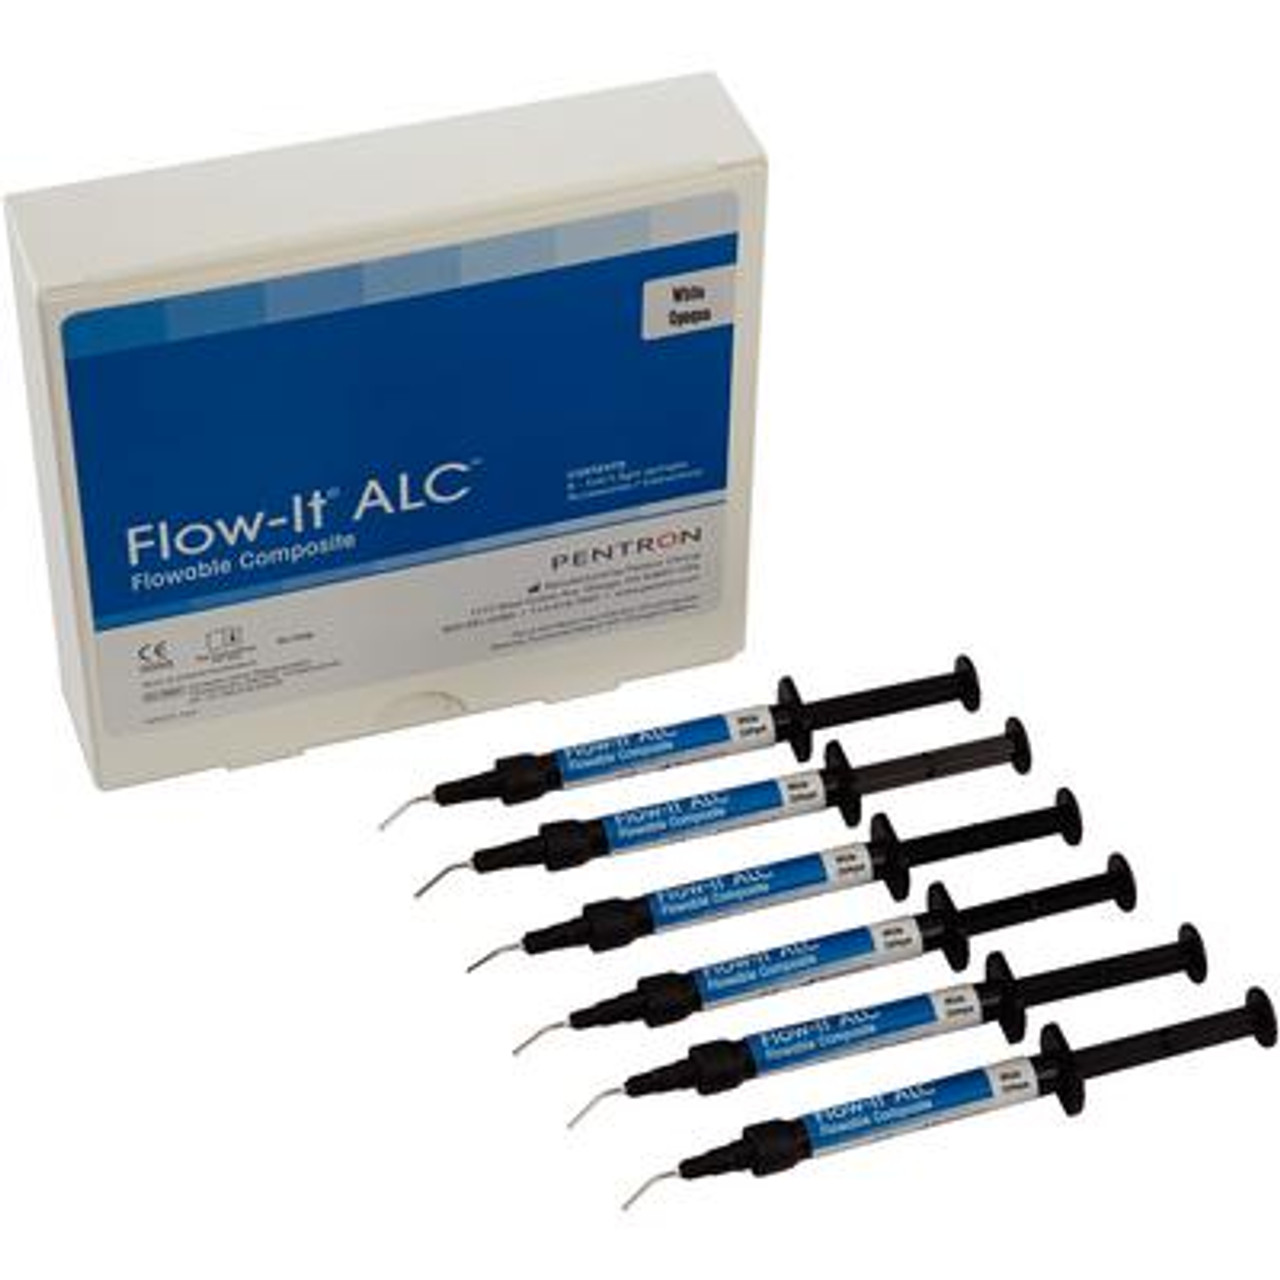 Pentron Flow-It ALC Flowable Composite White Opaque A0 Value Pack Syringe 6x1.5g & Tips